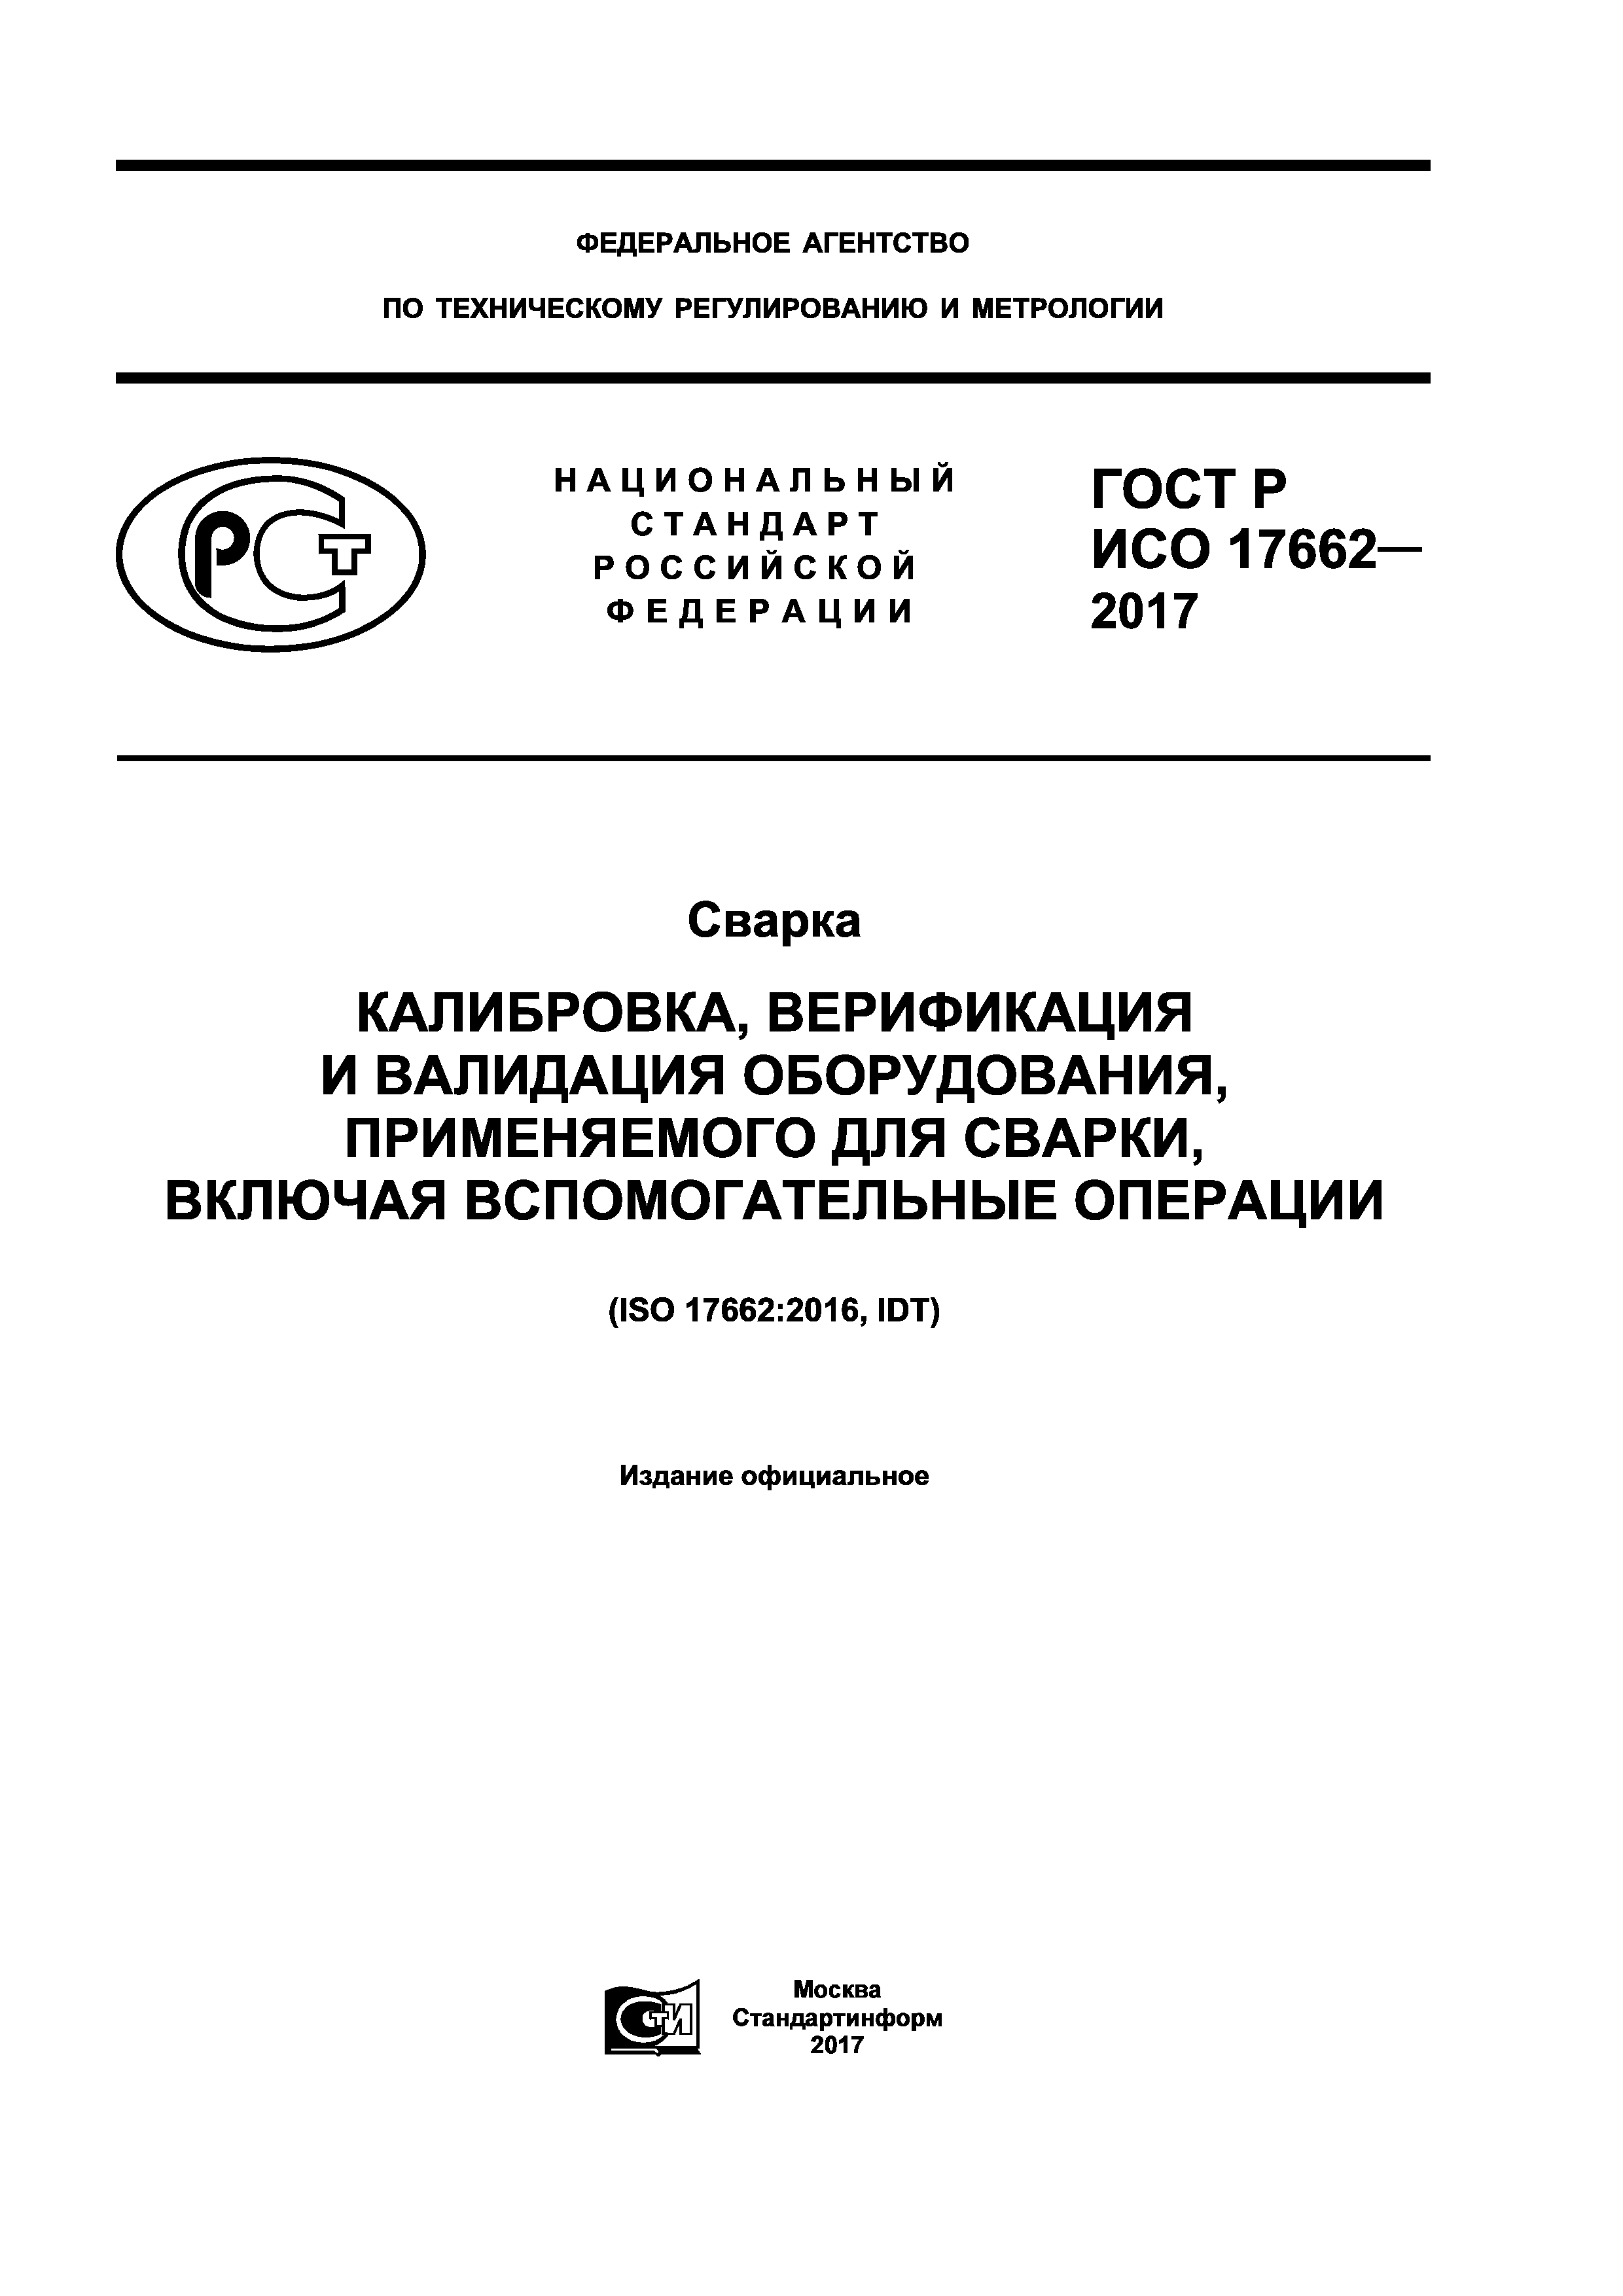 ГОСТ Р ИСО 17662-2017